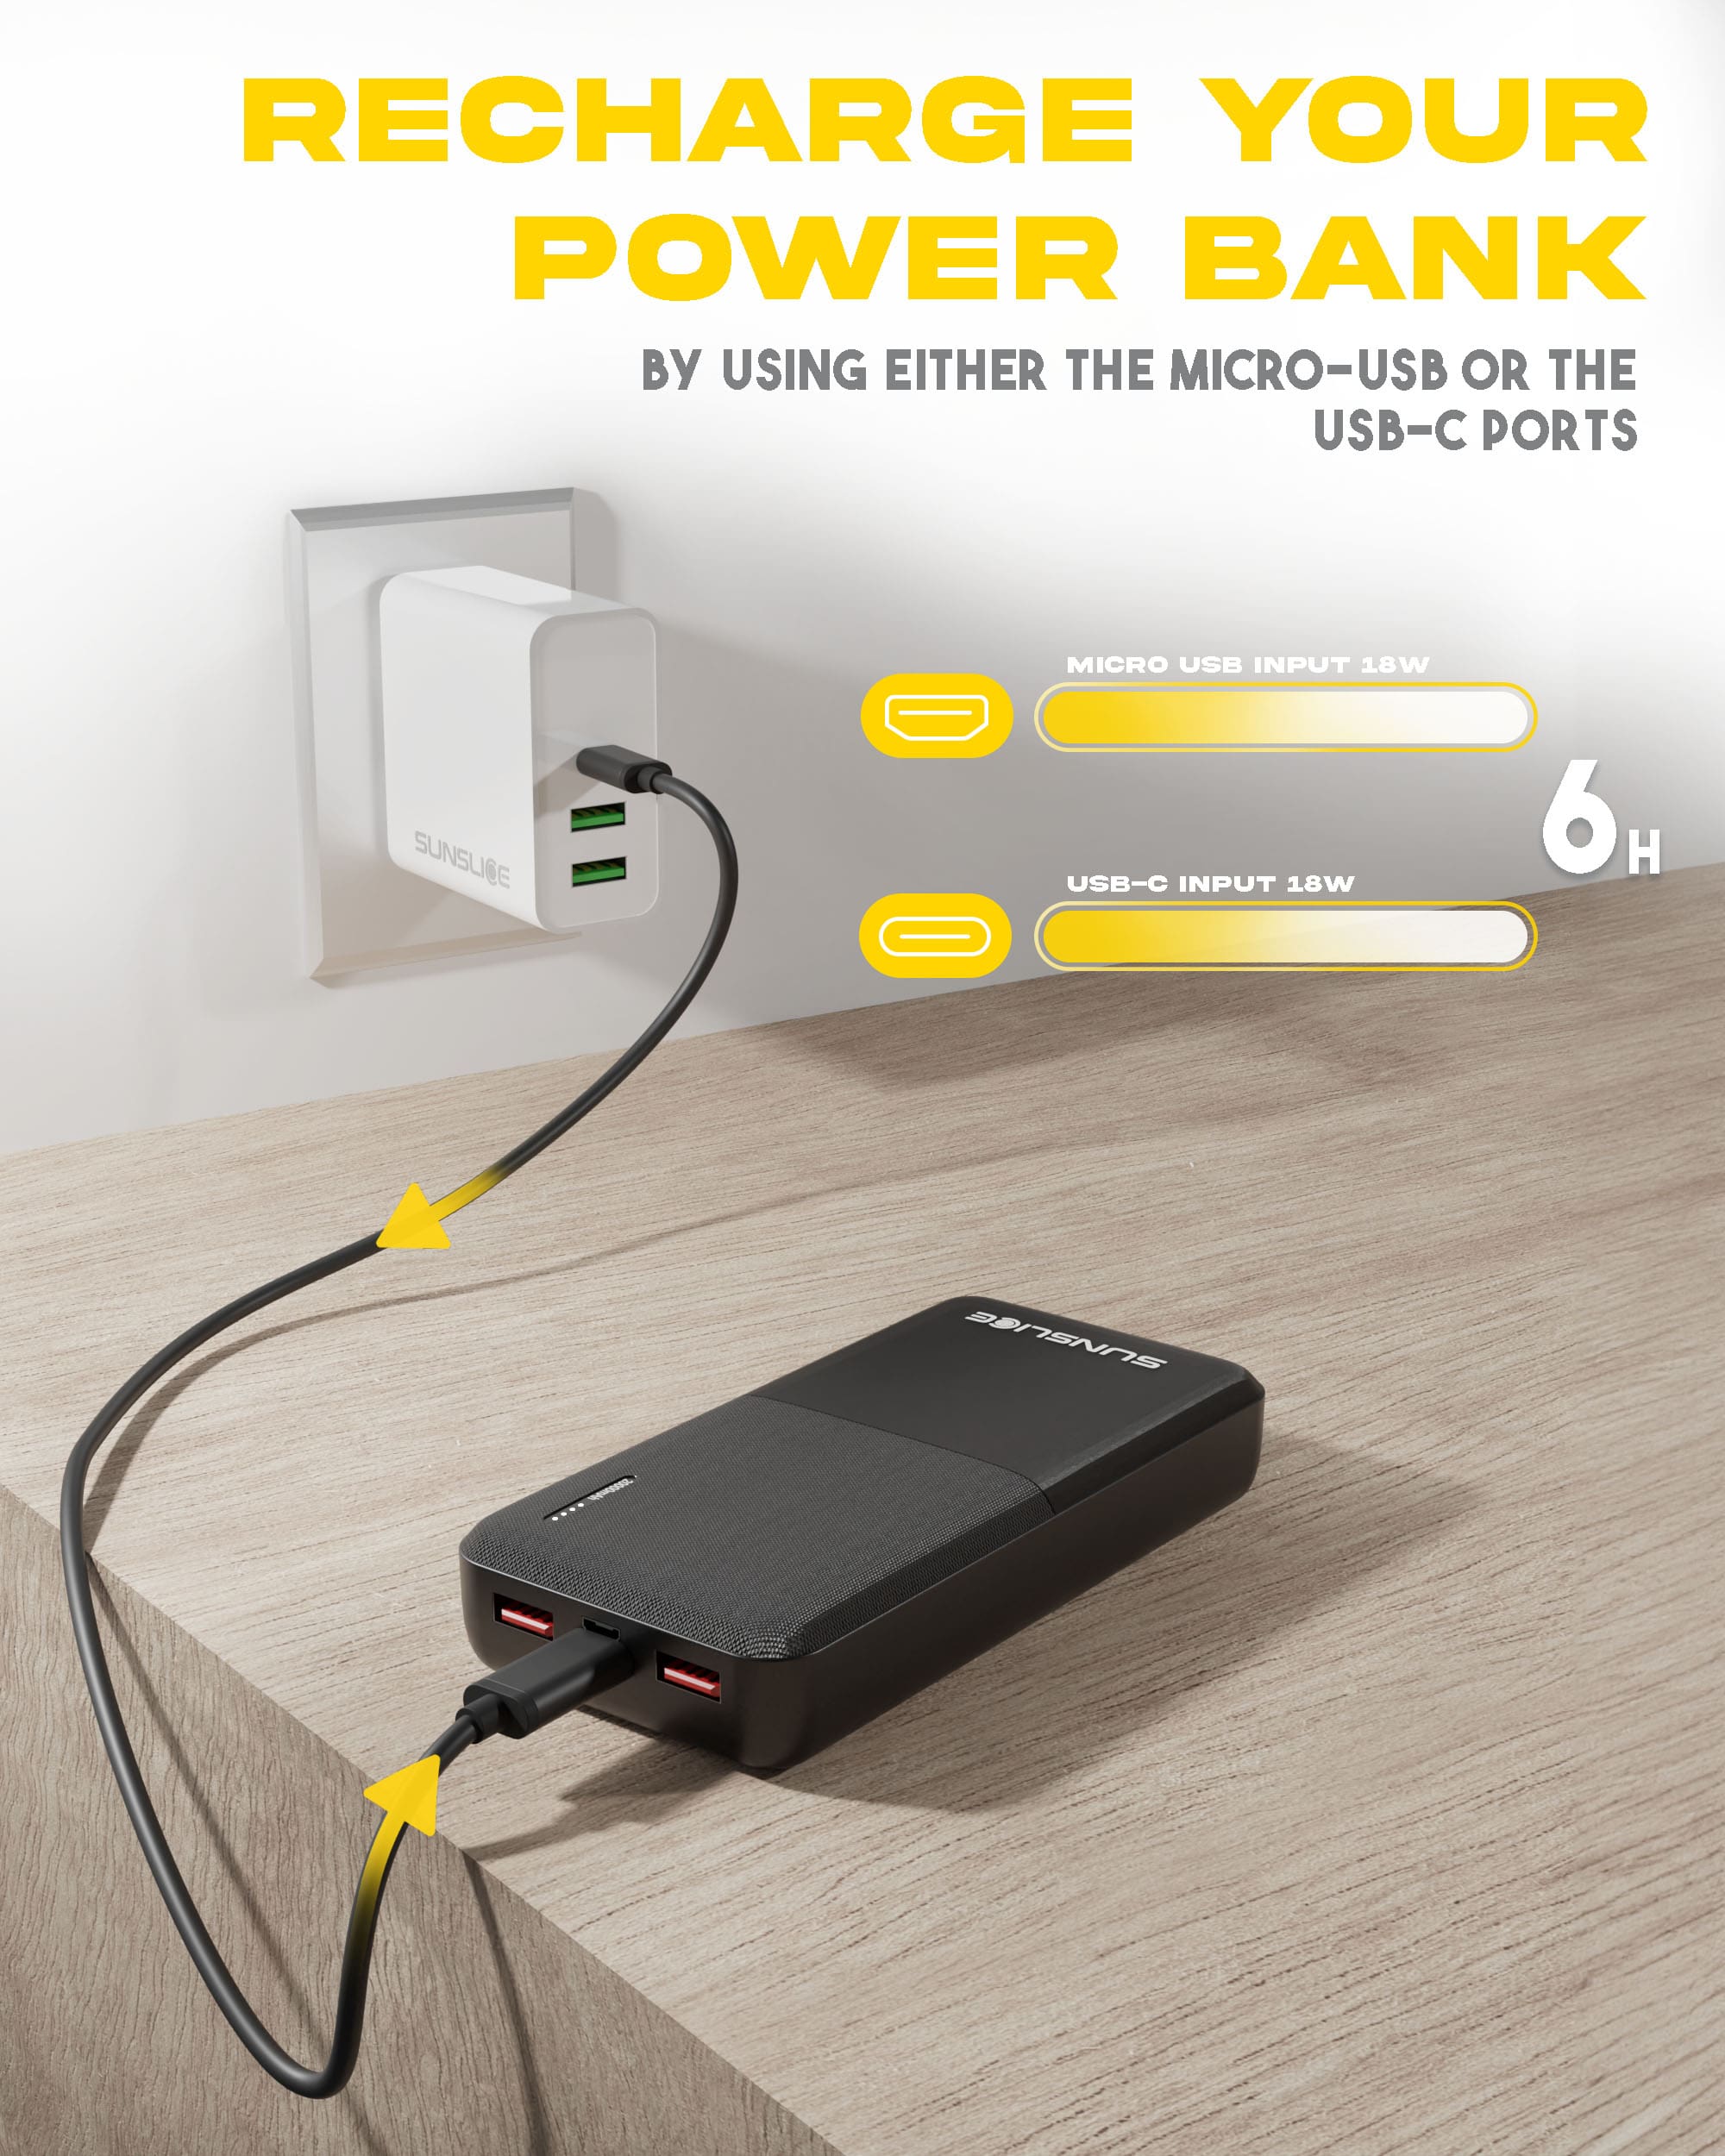 Die gravity 20 Powerbank kann entweder über den Micro-USB- oder den USB-C-Anschluss aufgeladen werden.